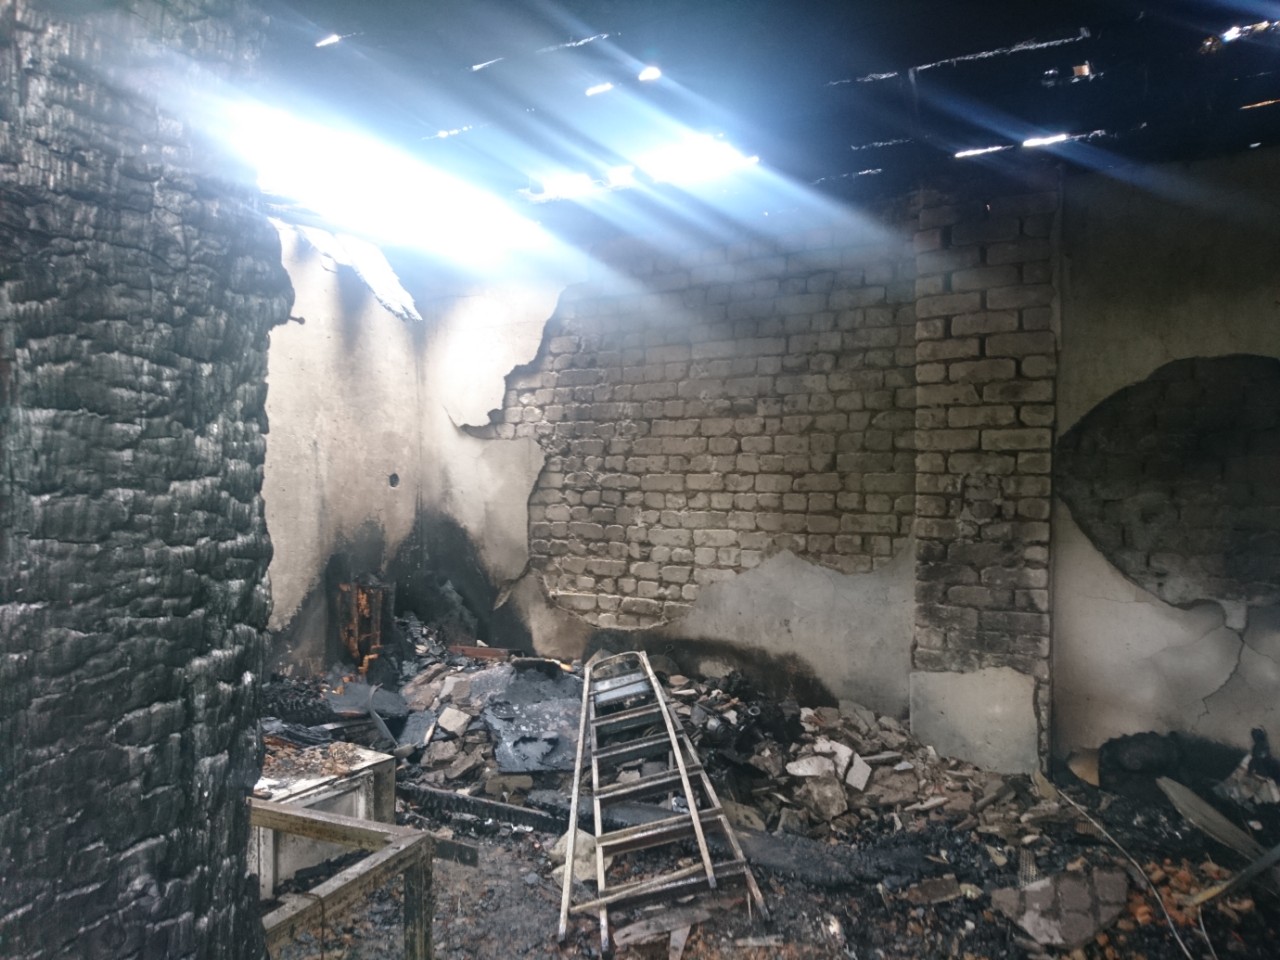 9 травня о 19:53 до Служби порятунку «101» надійшло повідомлення про пожежу у надвірній споруді (гараж), що на вулиці Борканюка у м. Перечин.